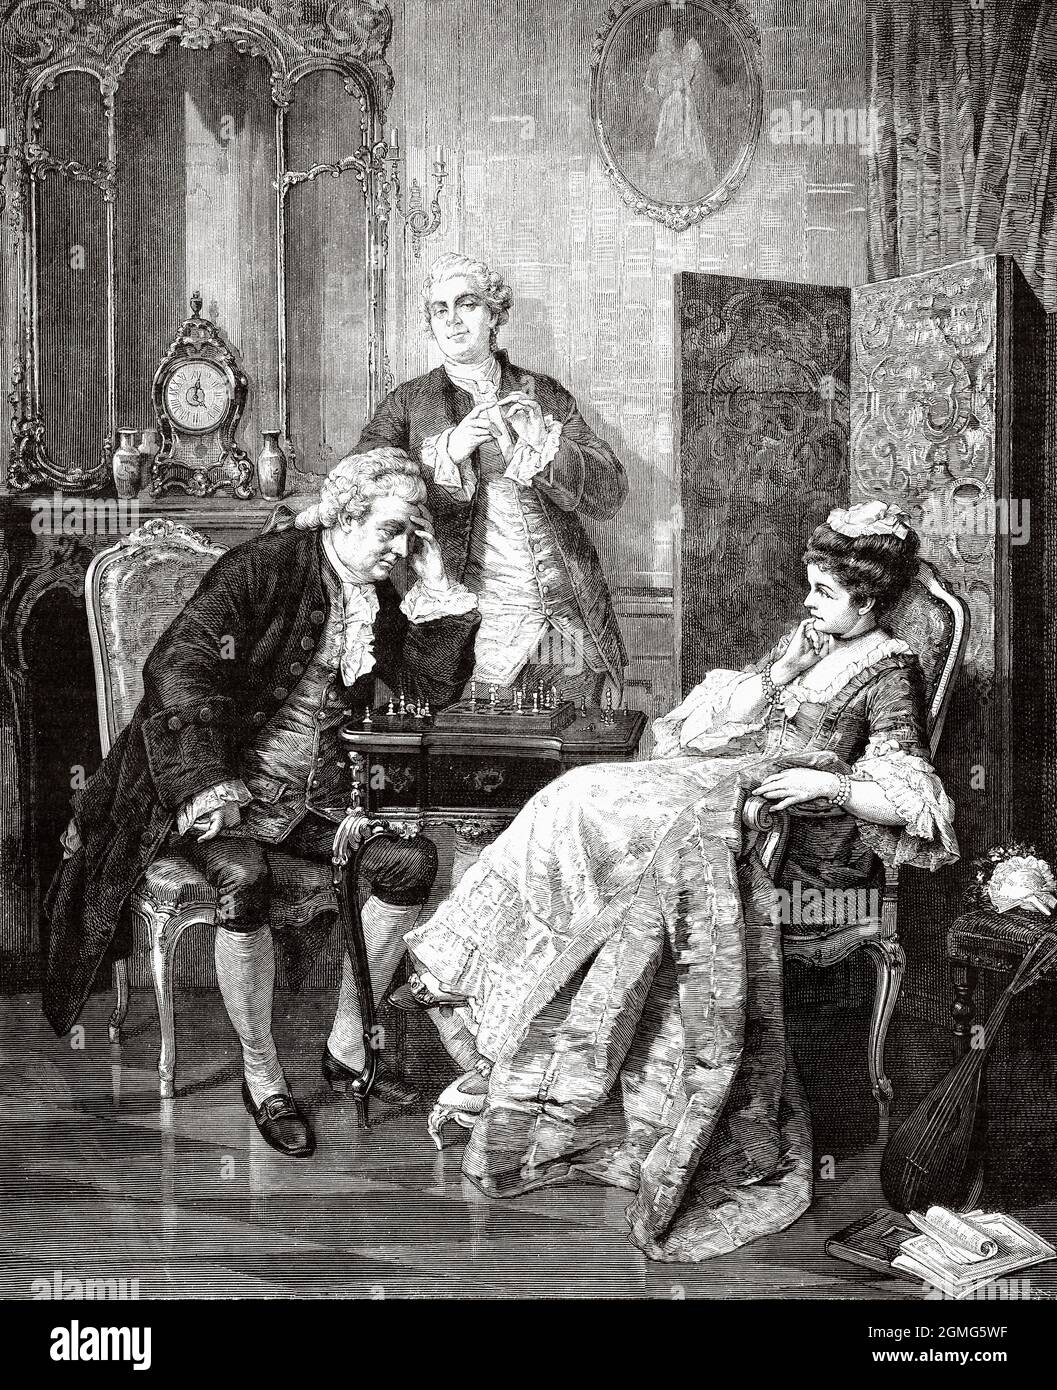 Chess Players, peinture par Otto Wilhelm Eduard Erdmann (1834-1905) est un peintre de genre allemand dans le style de renouveau de Rococo. Ancienne illustration gravée du XIXe siècle de la Ilustración Artística 1882 Banque D'Images